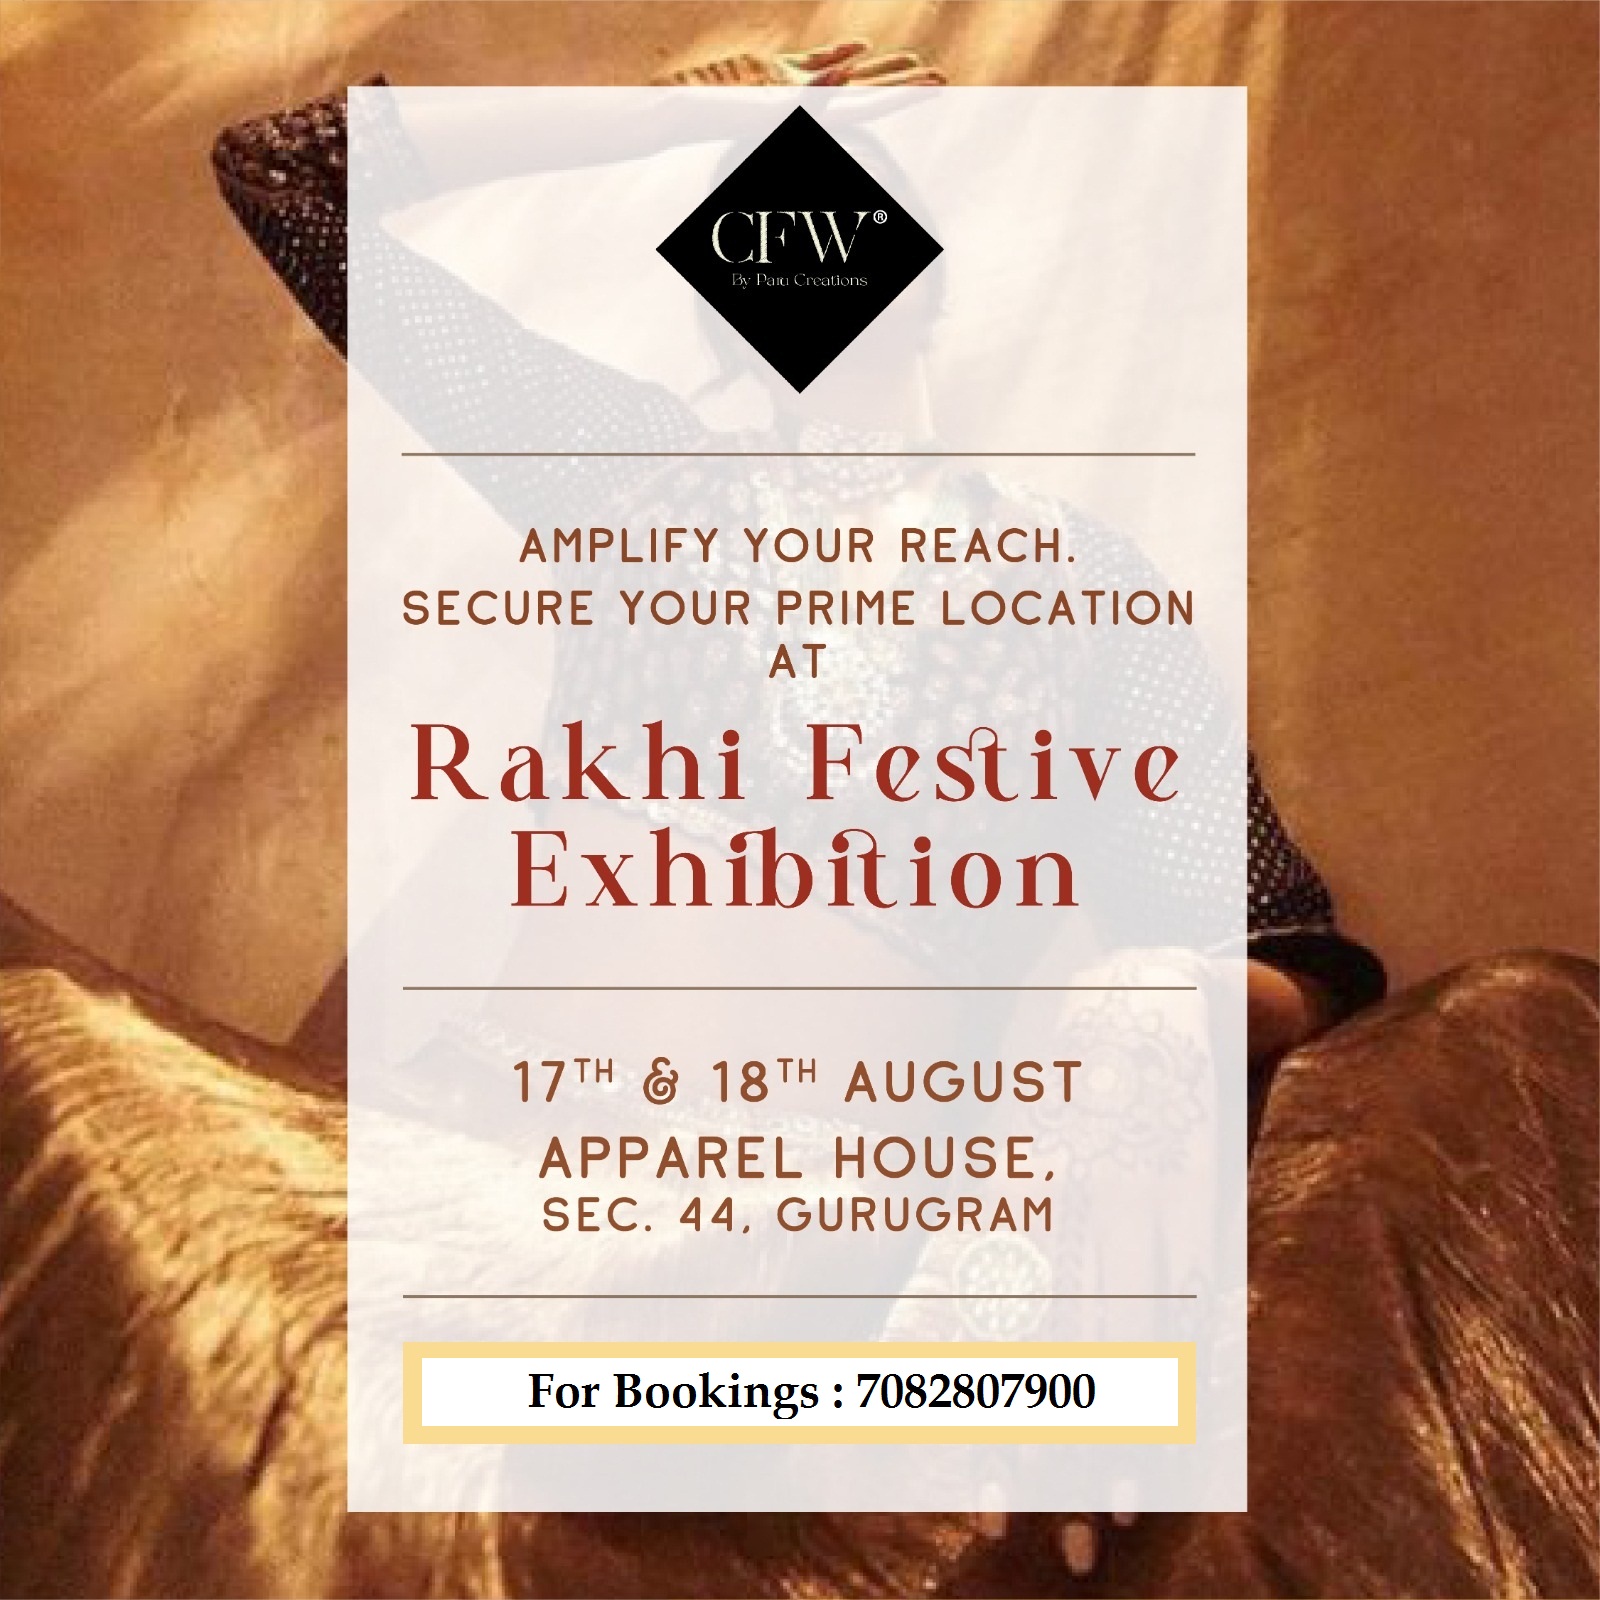 Rakhi Festive Exhibition